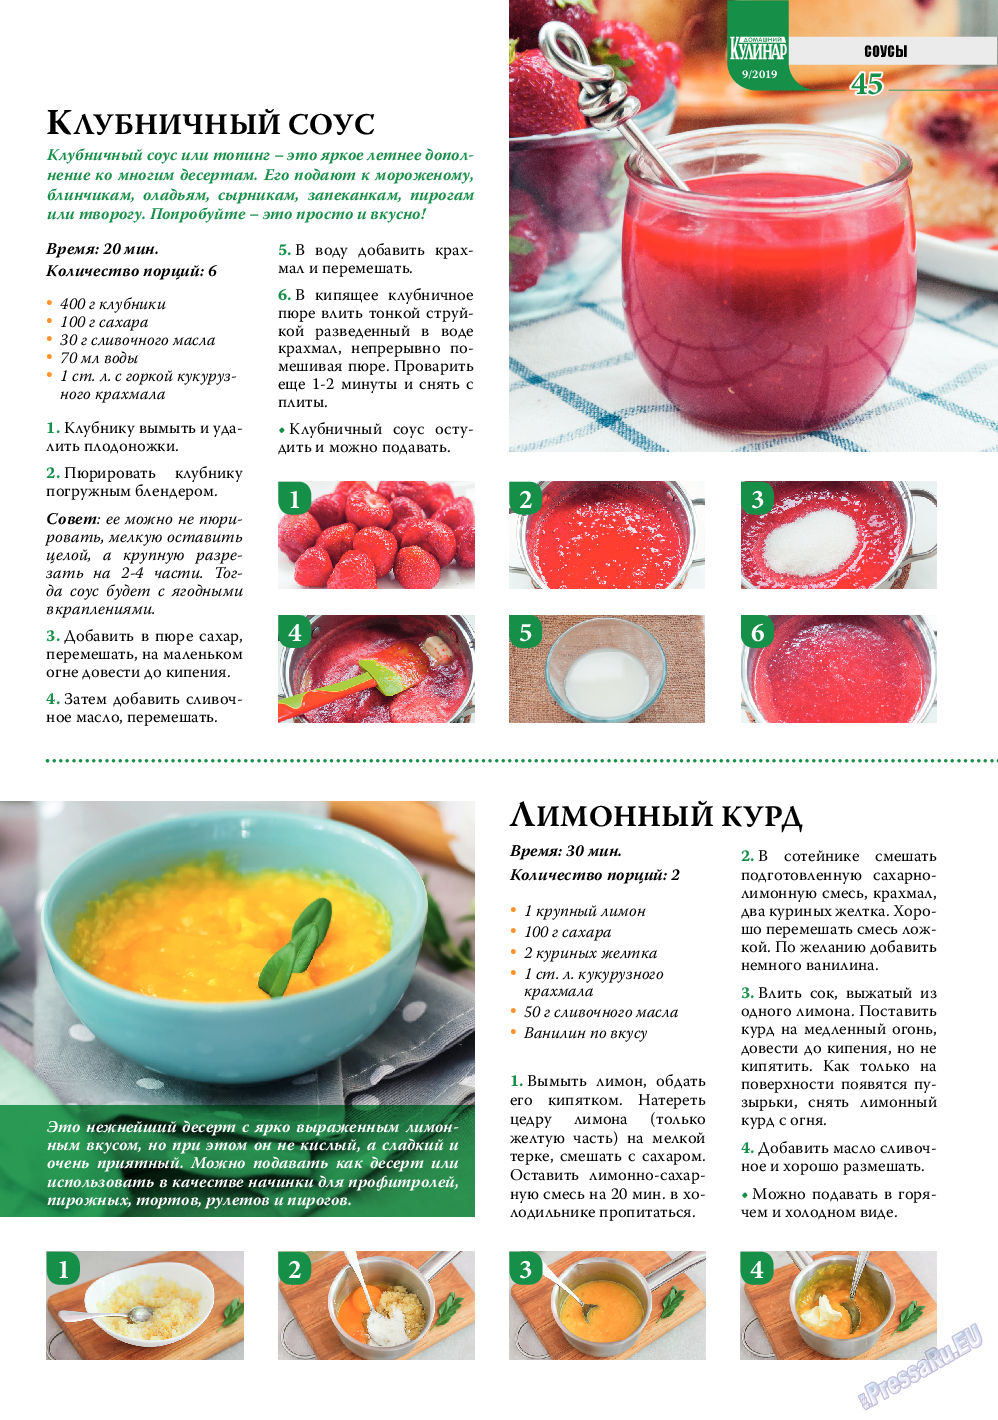 Домашний кулинар, журнал. 2019 №9 стр.45